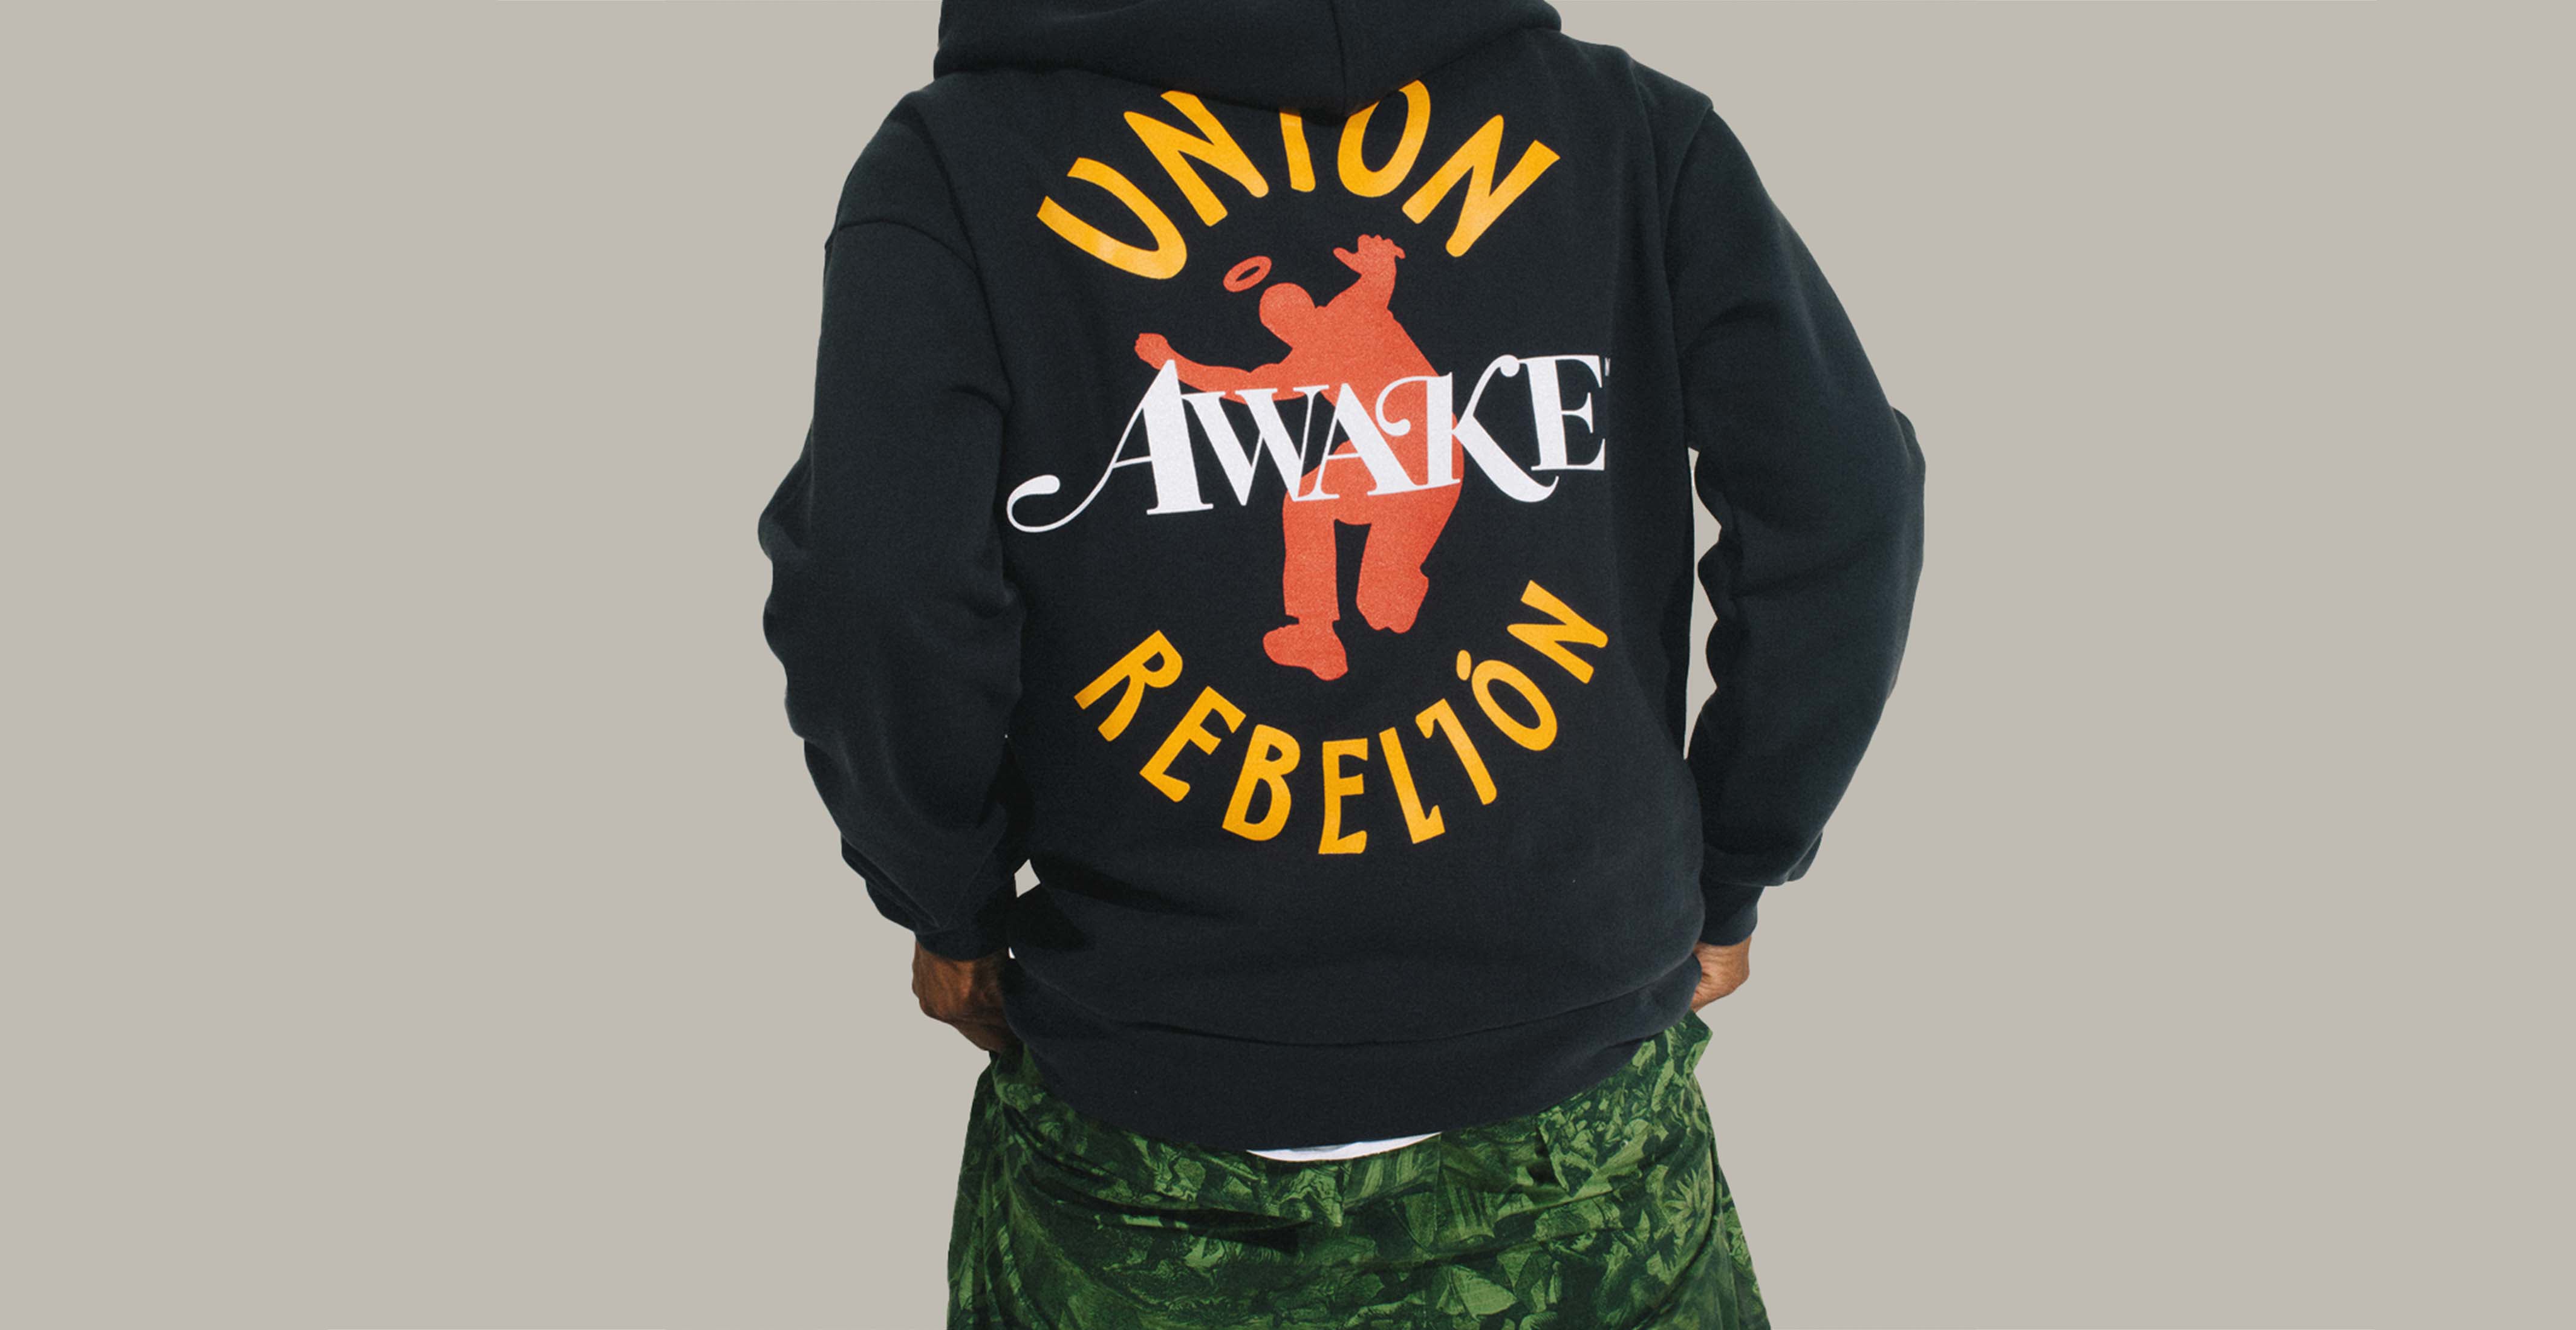 Union x Awake: Rebelión